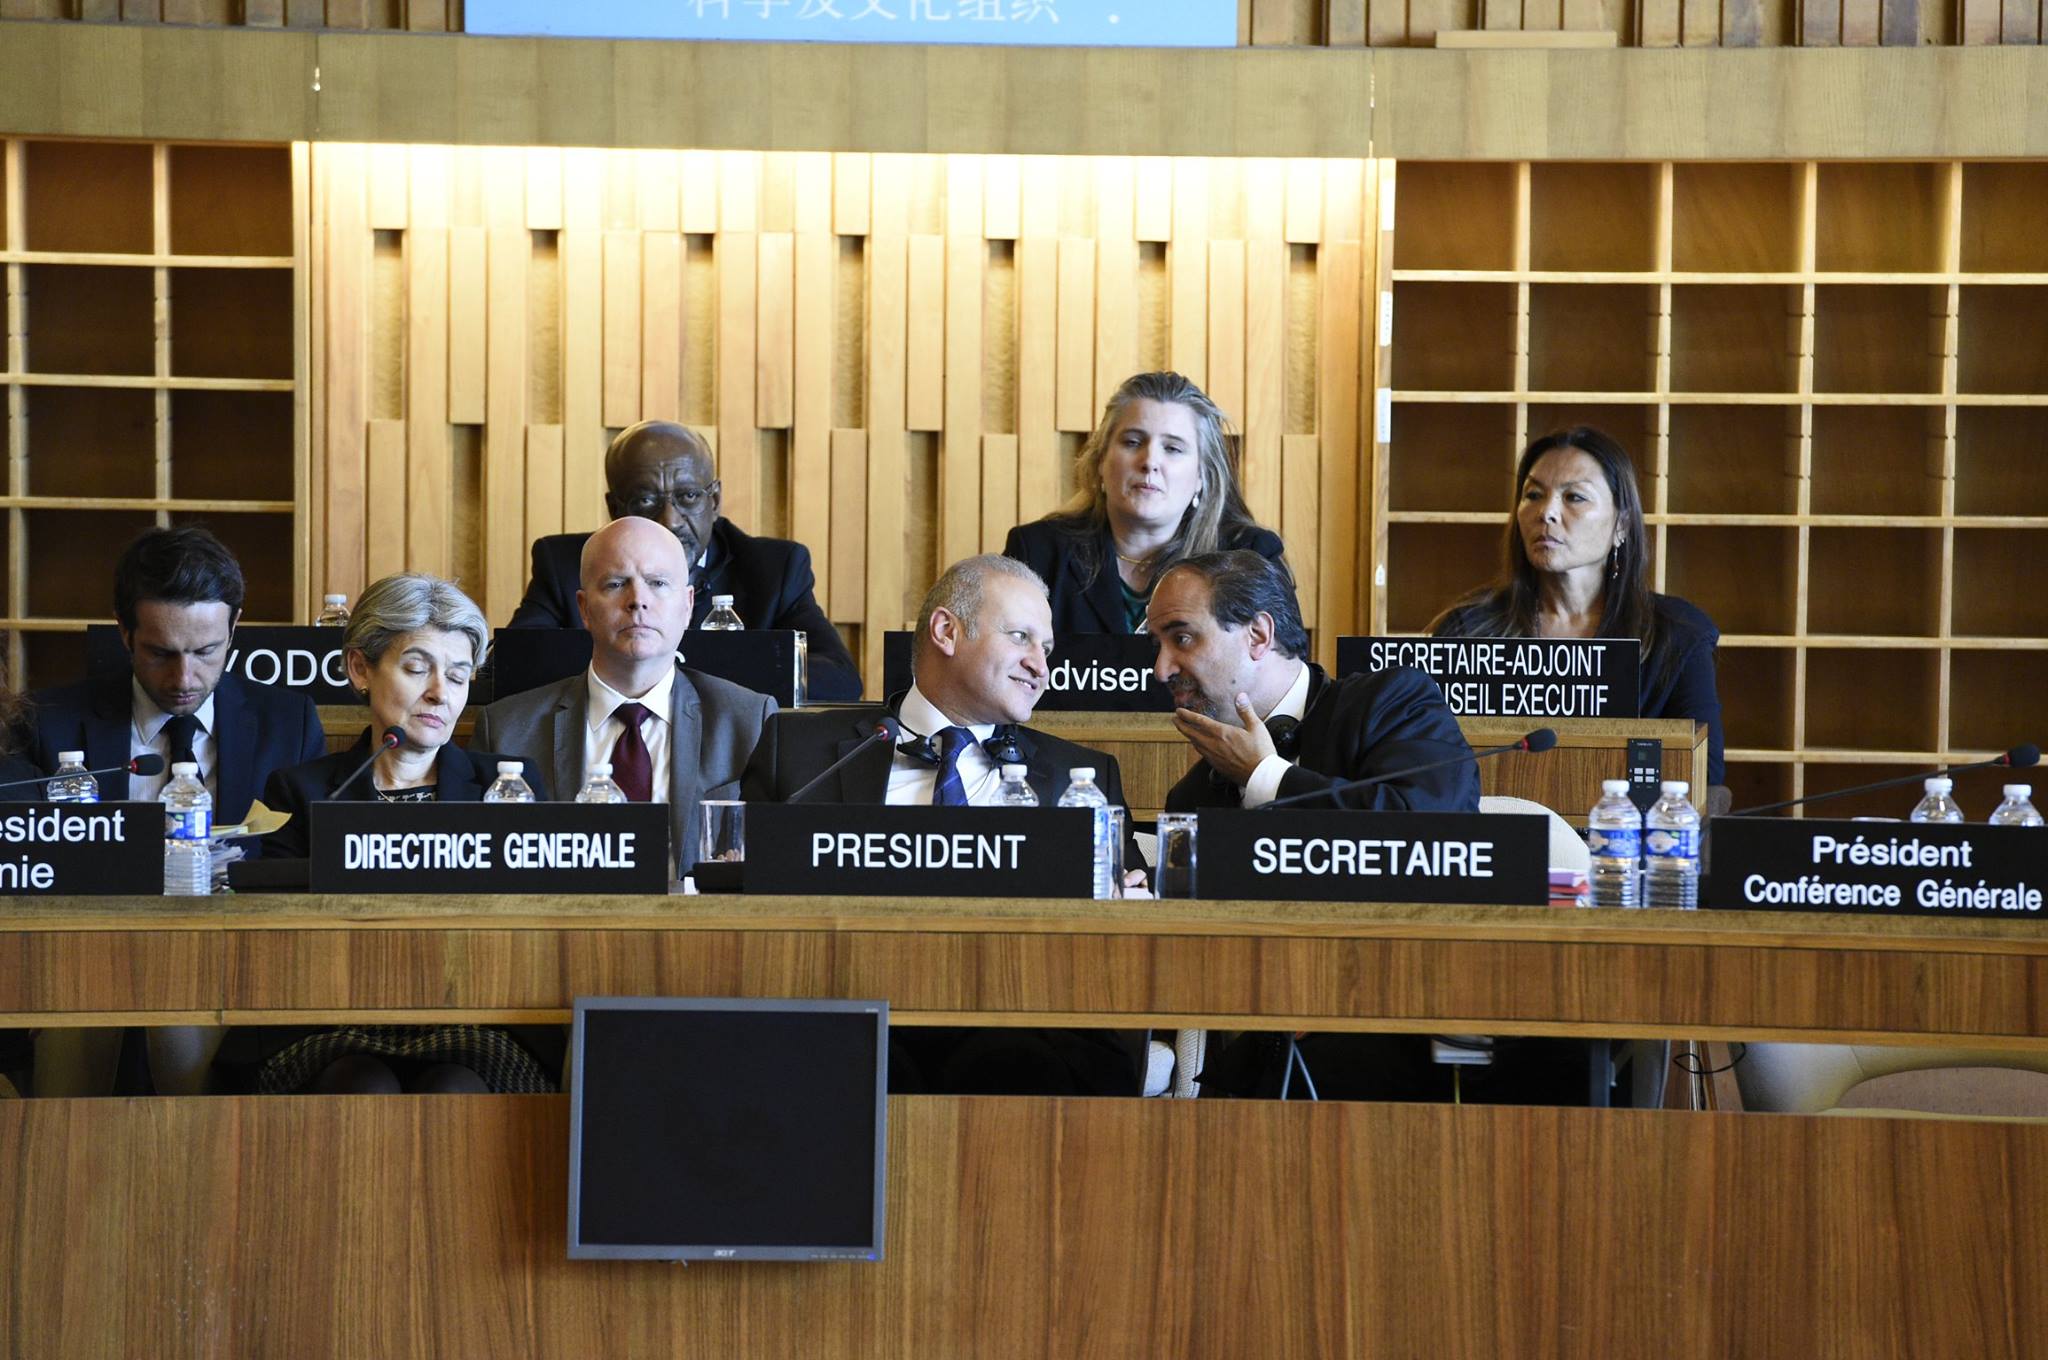 UNESCO Executive Board Meeting 11 